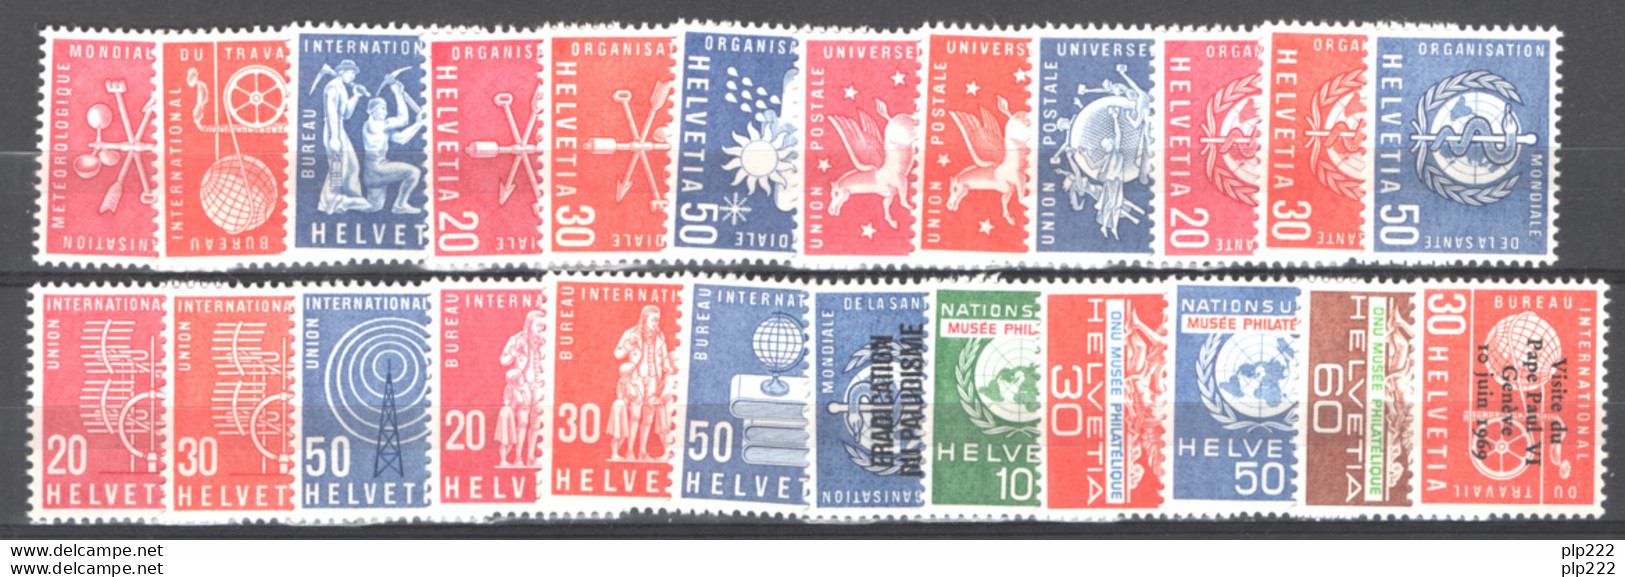 Svizzera 1948/60 Accumulation 200 Val.in Serie Complete / Accumulation 200 Val. Complete Set **/MNH VF - Collections